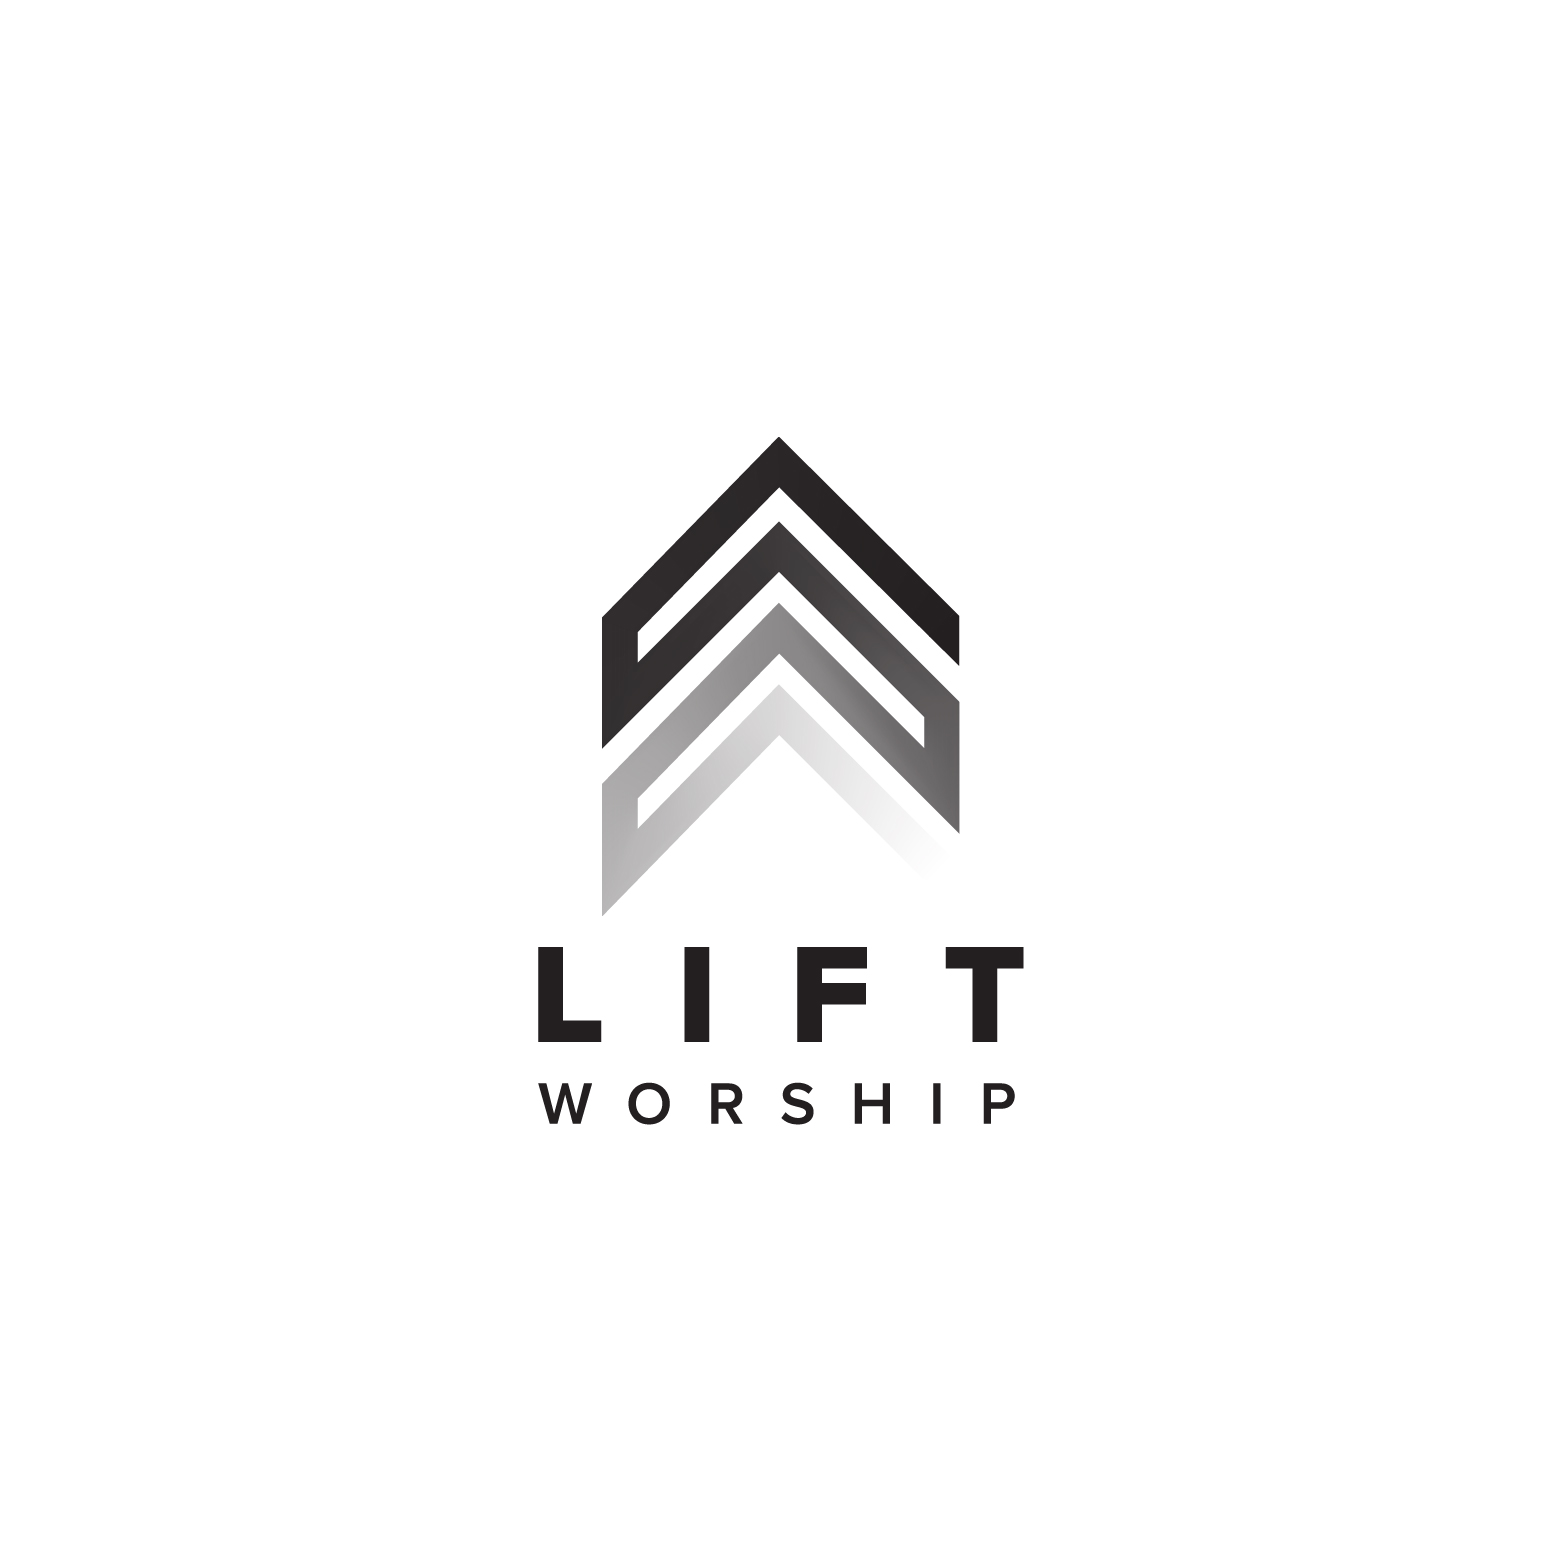 Lift Worship logo